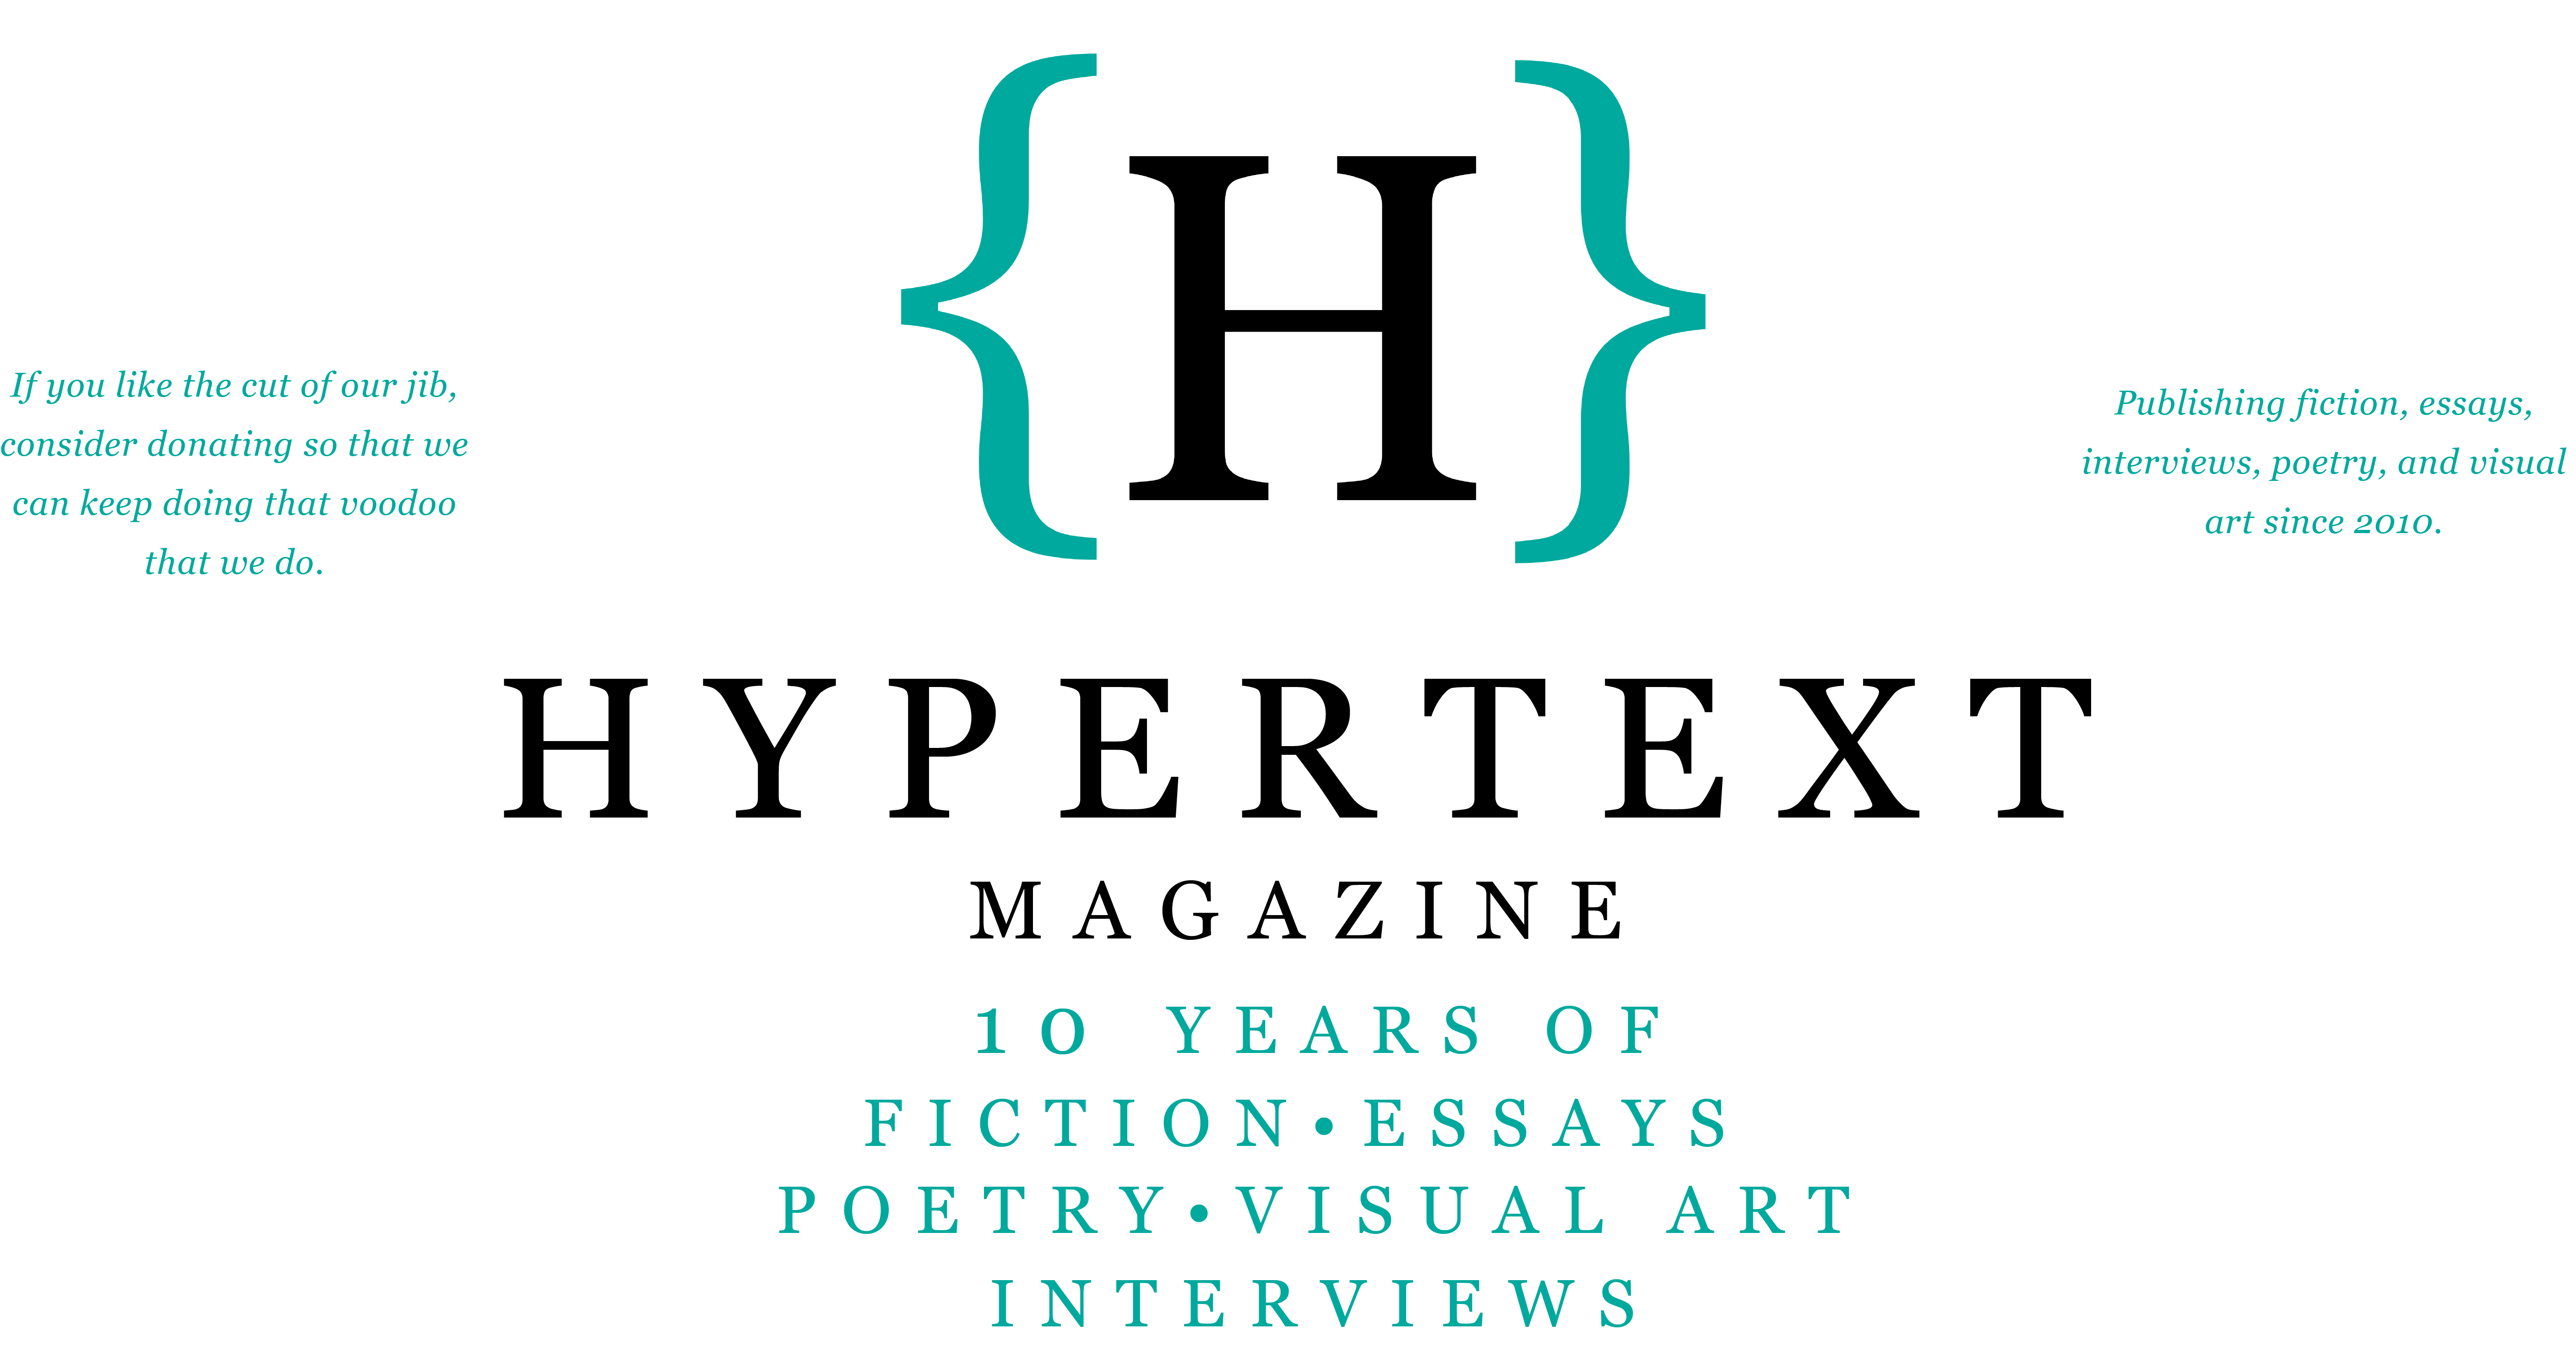 Interview with Memoirist Suzanne Clores in Hypertext Magazine